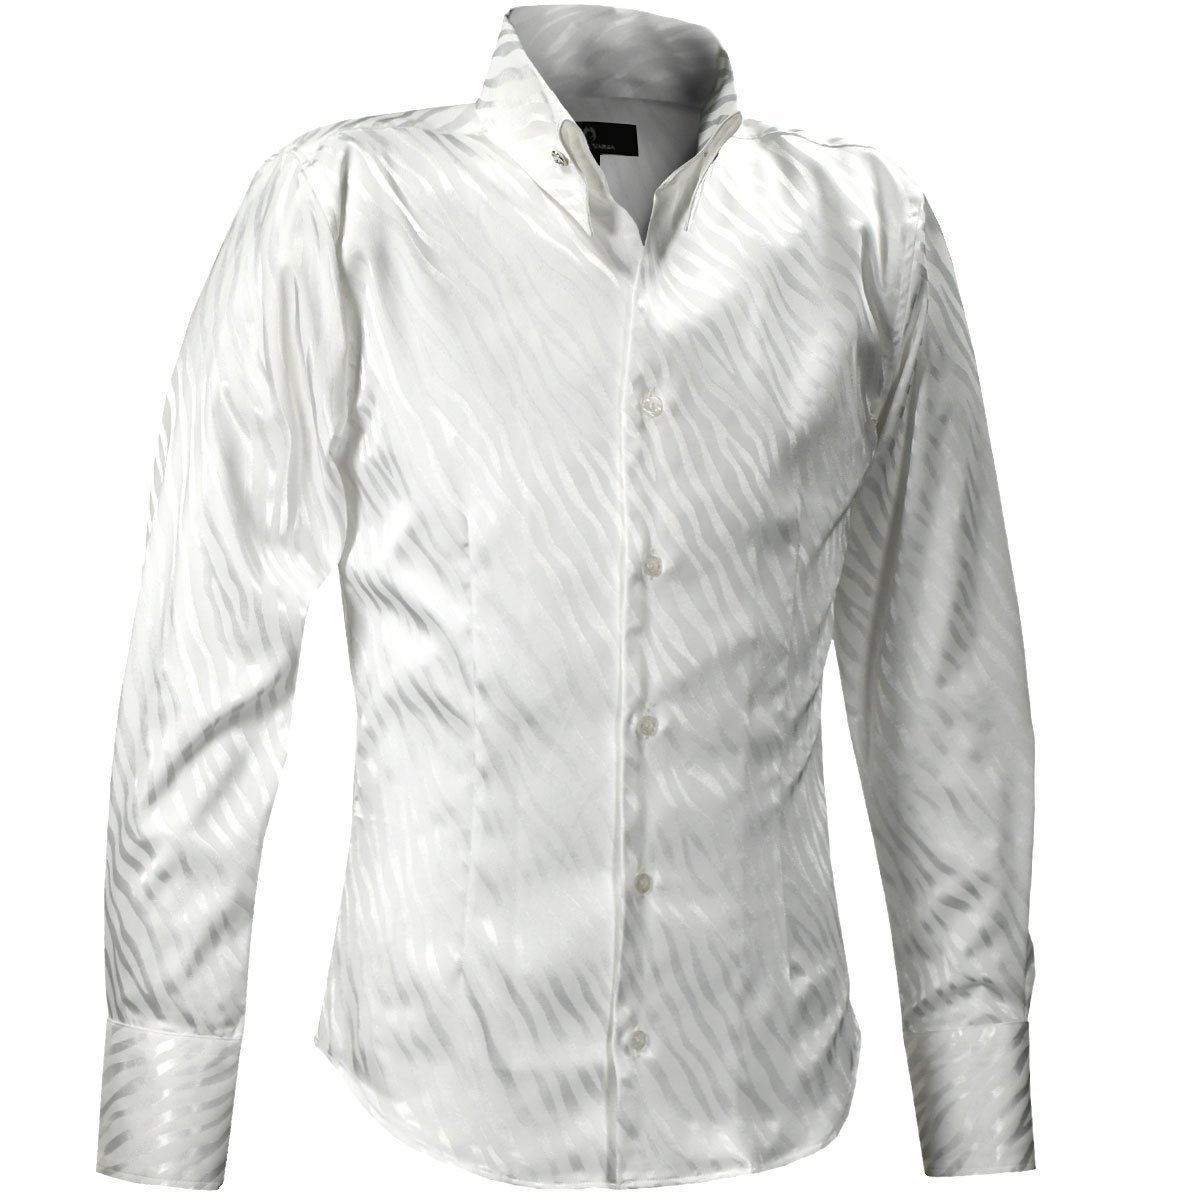 181724-wh BlackVaria サテンシャツ ドレスシャツ スキッパー ゼブラ柄 ジャガード ボタンダウン スリム メンズ(ホワイト白) L パーティー_画像7